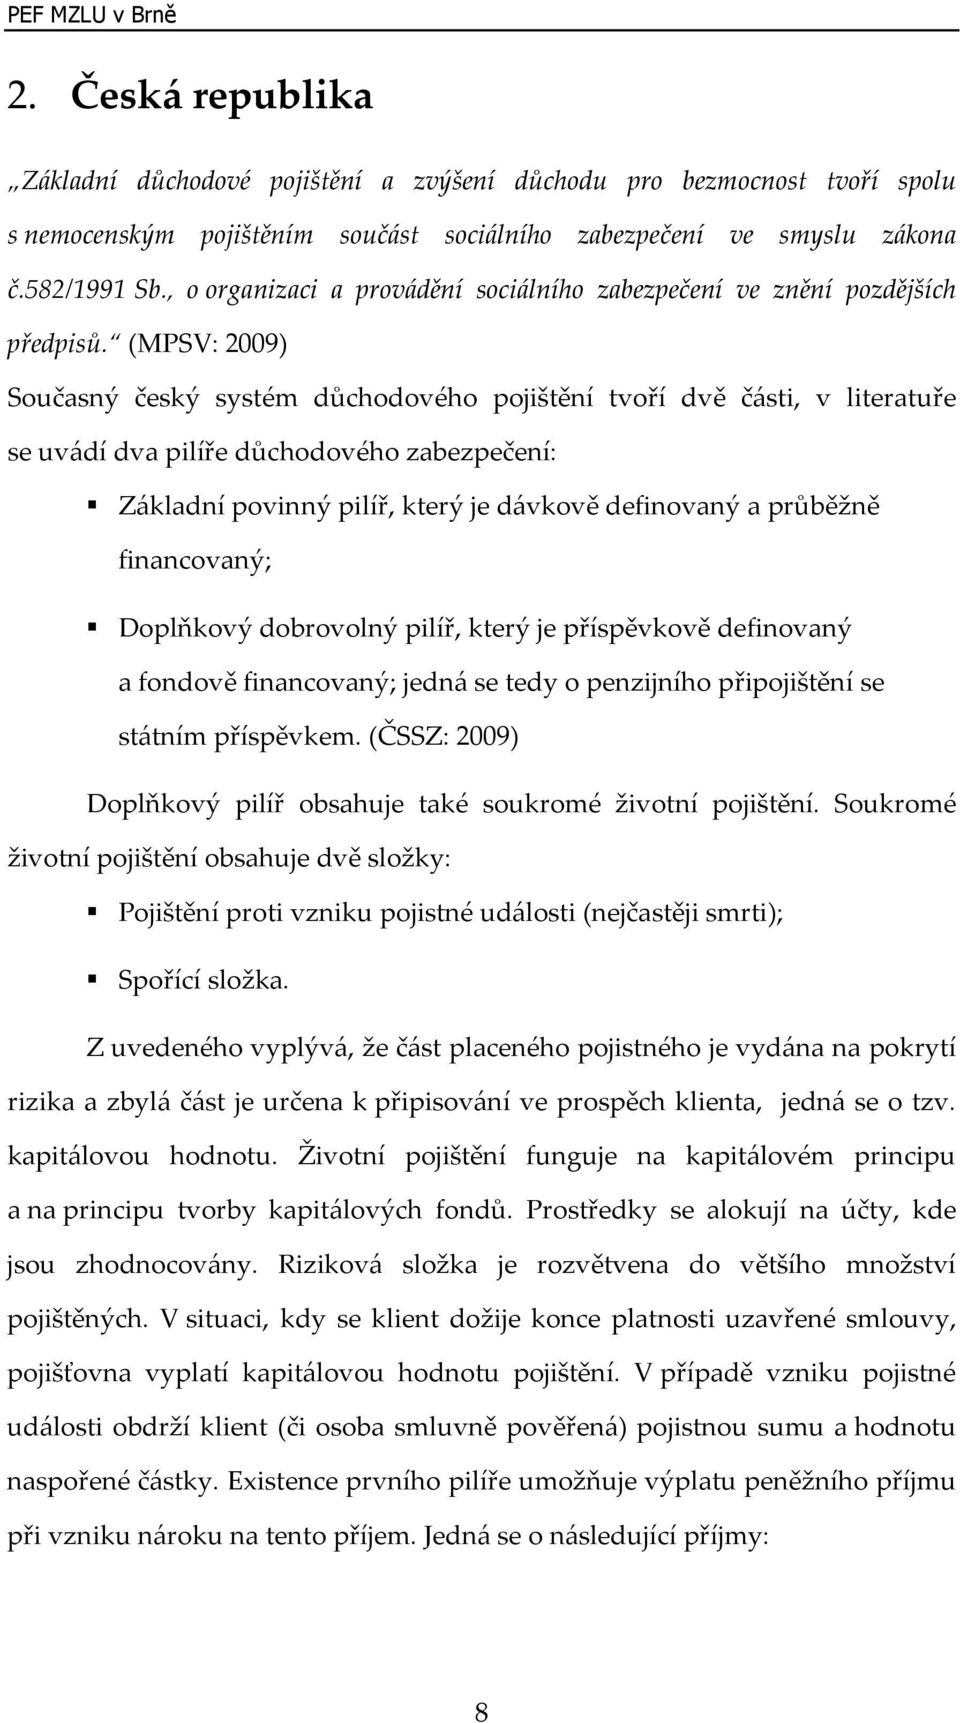 (MPSV: 2009) Současný český systém důchodového pojištění tvoří dvě části, v literatuře se uvádí dva pilíře důchodového zabezpečení: Základní povinný pilíř, který je dávkově definovaný a průběžně